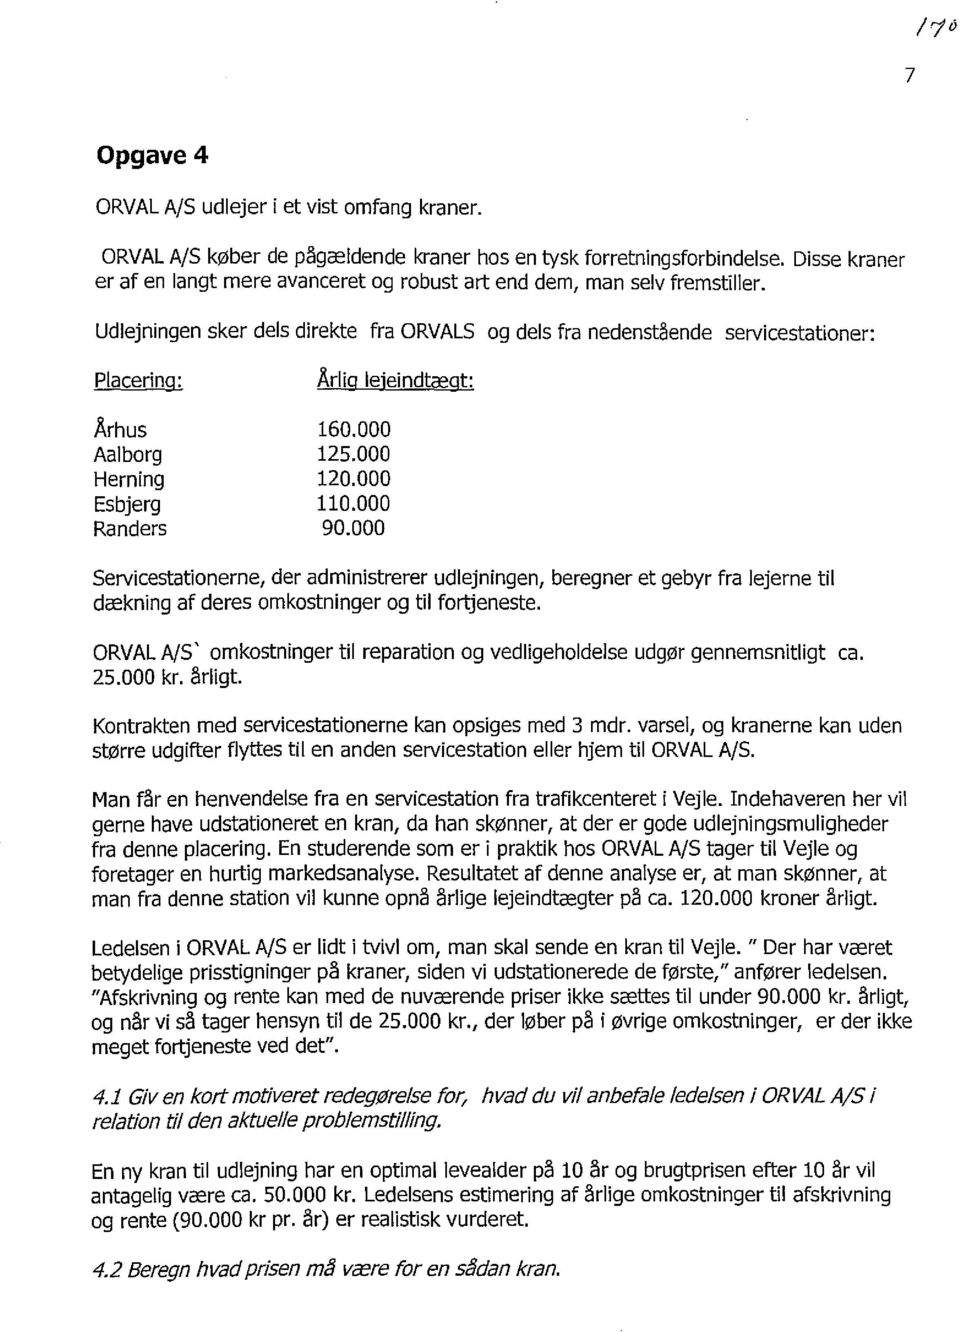 Udlejningen sker dels direkte fra ORVALS og dels fra nedenstilende servicestationer: Placering: Århus Aalborg Herning Esbjerg Randers Årlig lejeindtægt: 160.000 125.000 120.000 110.000 90.